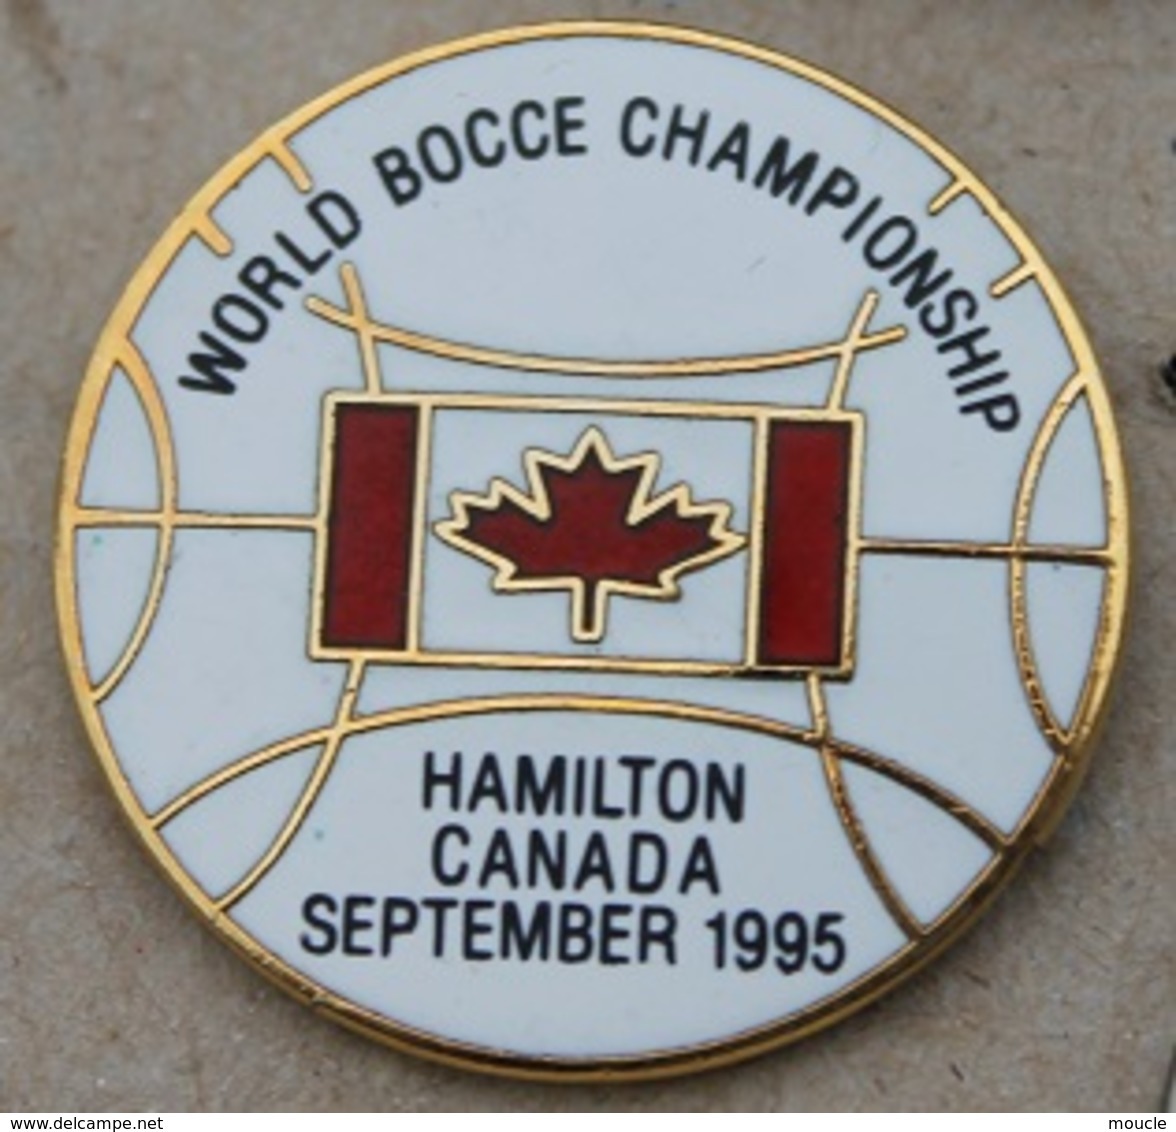 WORLD BOCCE CHAMPIONSHIP - HAMILTON CANADA SEPTEMBER 1995 - FEUILLE D'ERABLE - BOULE - PETANQUE -      (25) - Pétanque